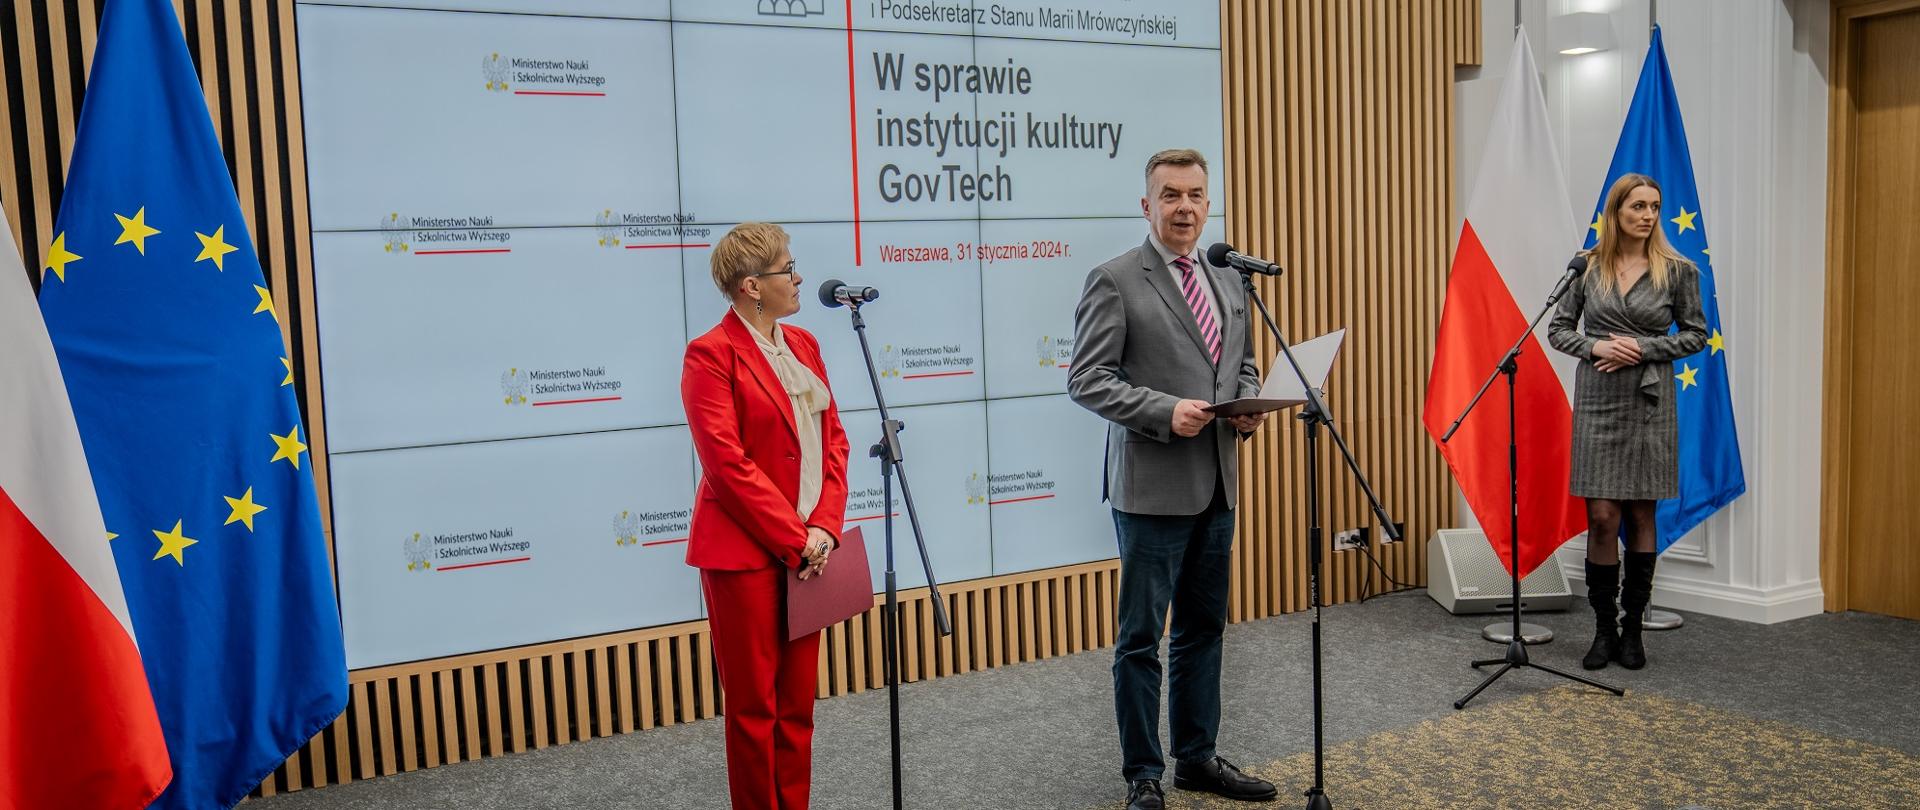 Na sali stoi minister Wieczorek i wiceminister Mrówczyńska w czerwonym garniturze, minister mówi do mikrofonu na stojaku.